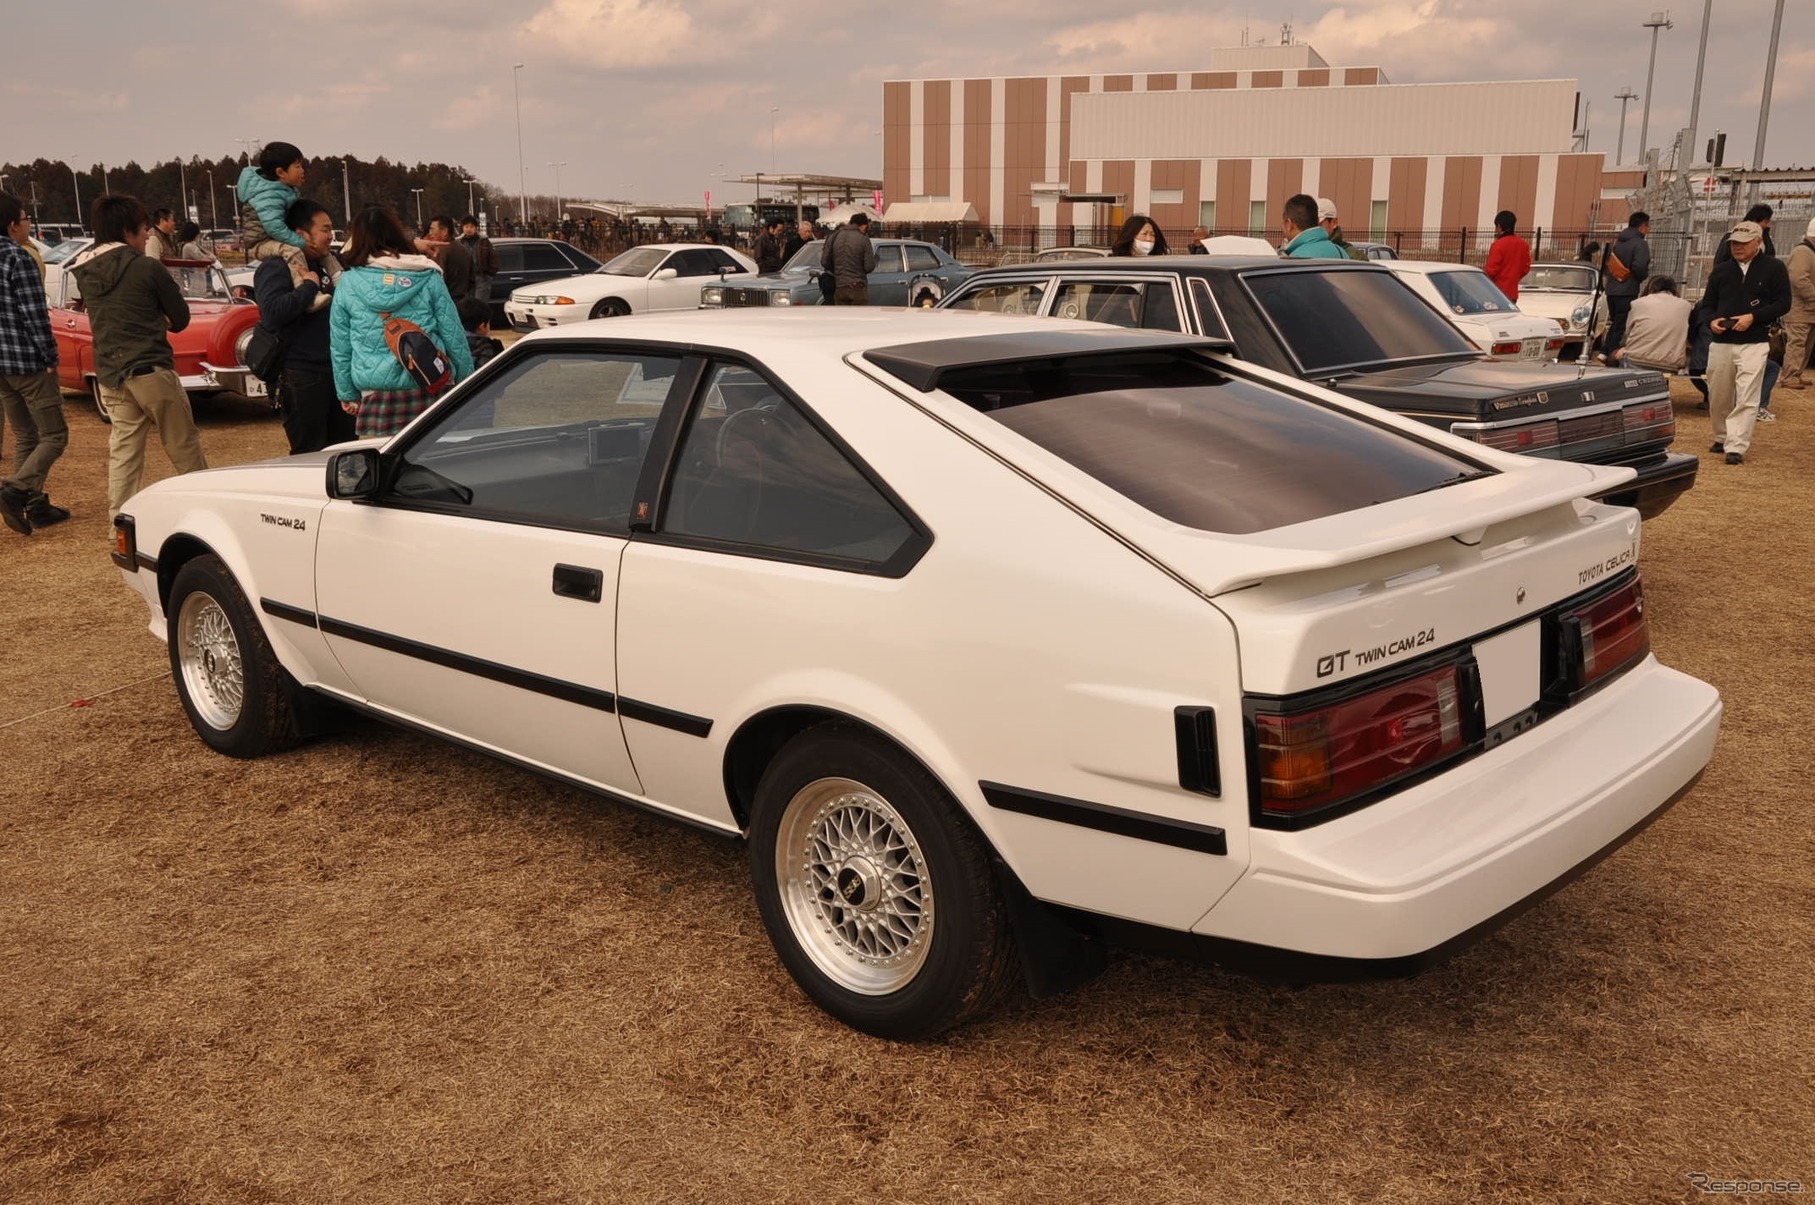 1985年式 セリカXX GT